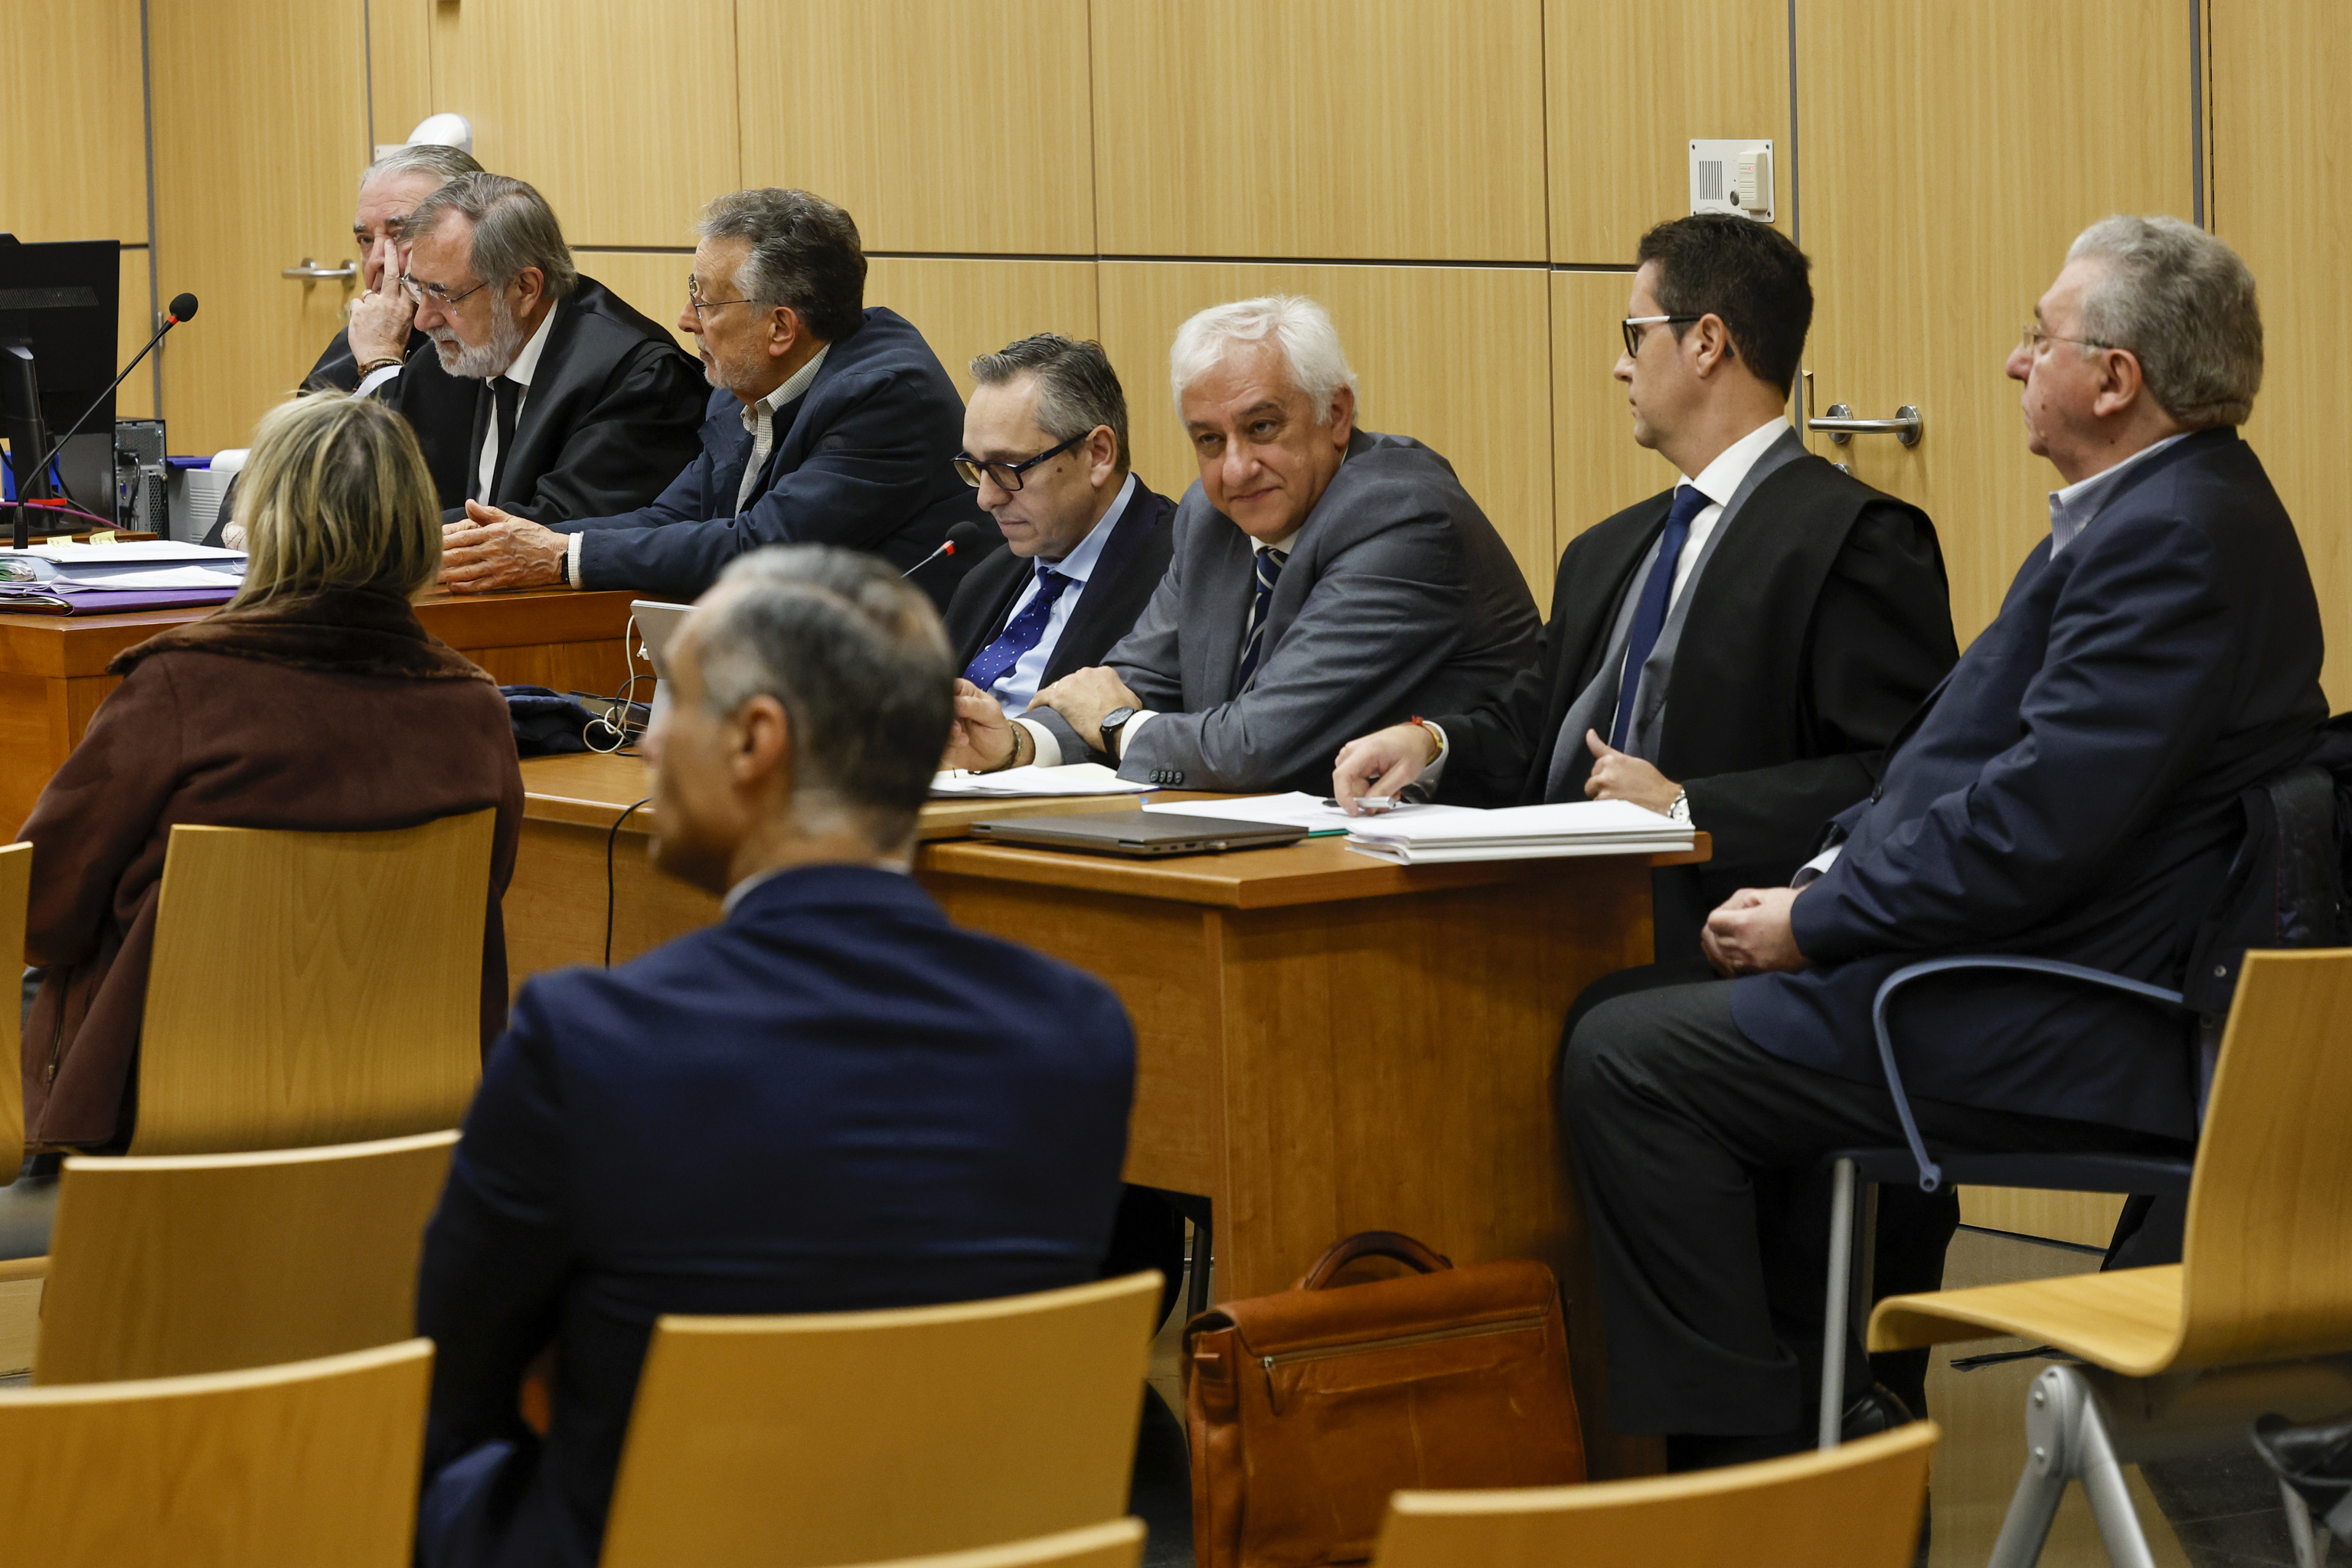 Los acusados Grau, Santón, Salinas y María Carmen García Fuster, junto a sus abogados durante la vista oral.